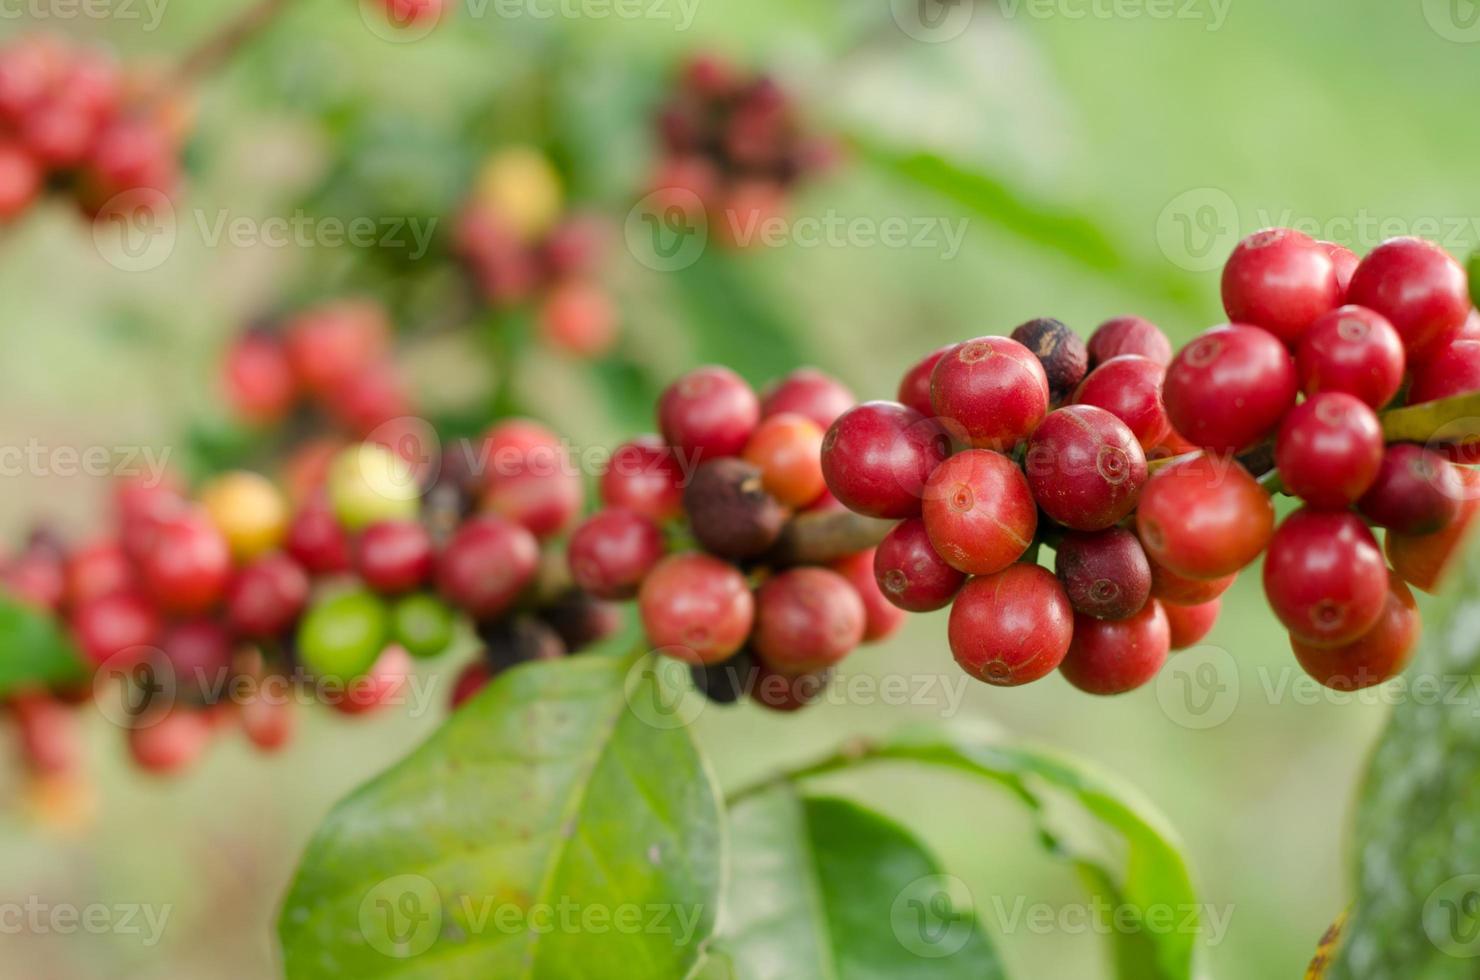 grãos de café crescendo na árvore foto